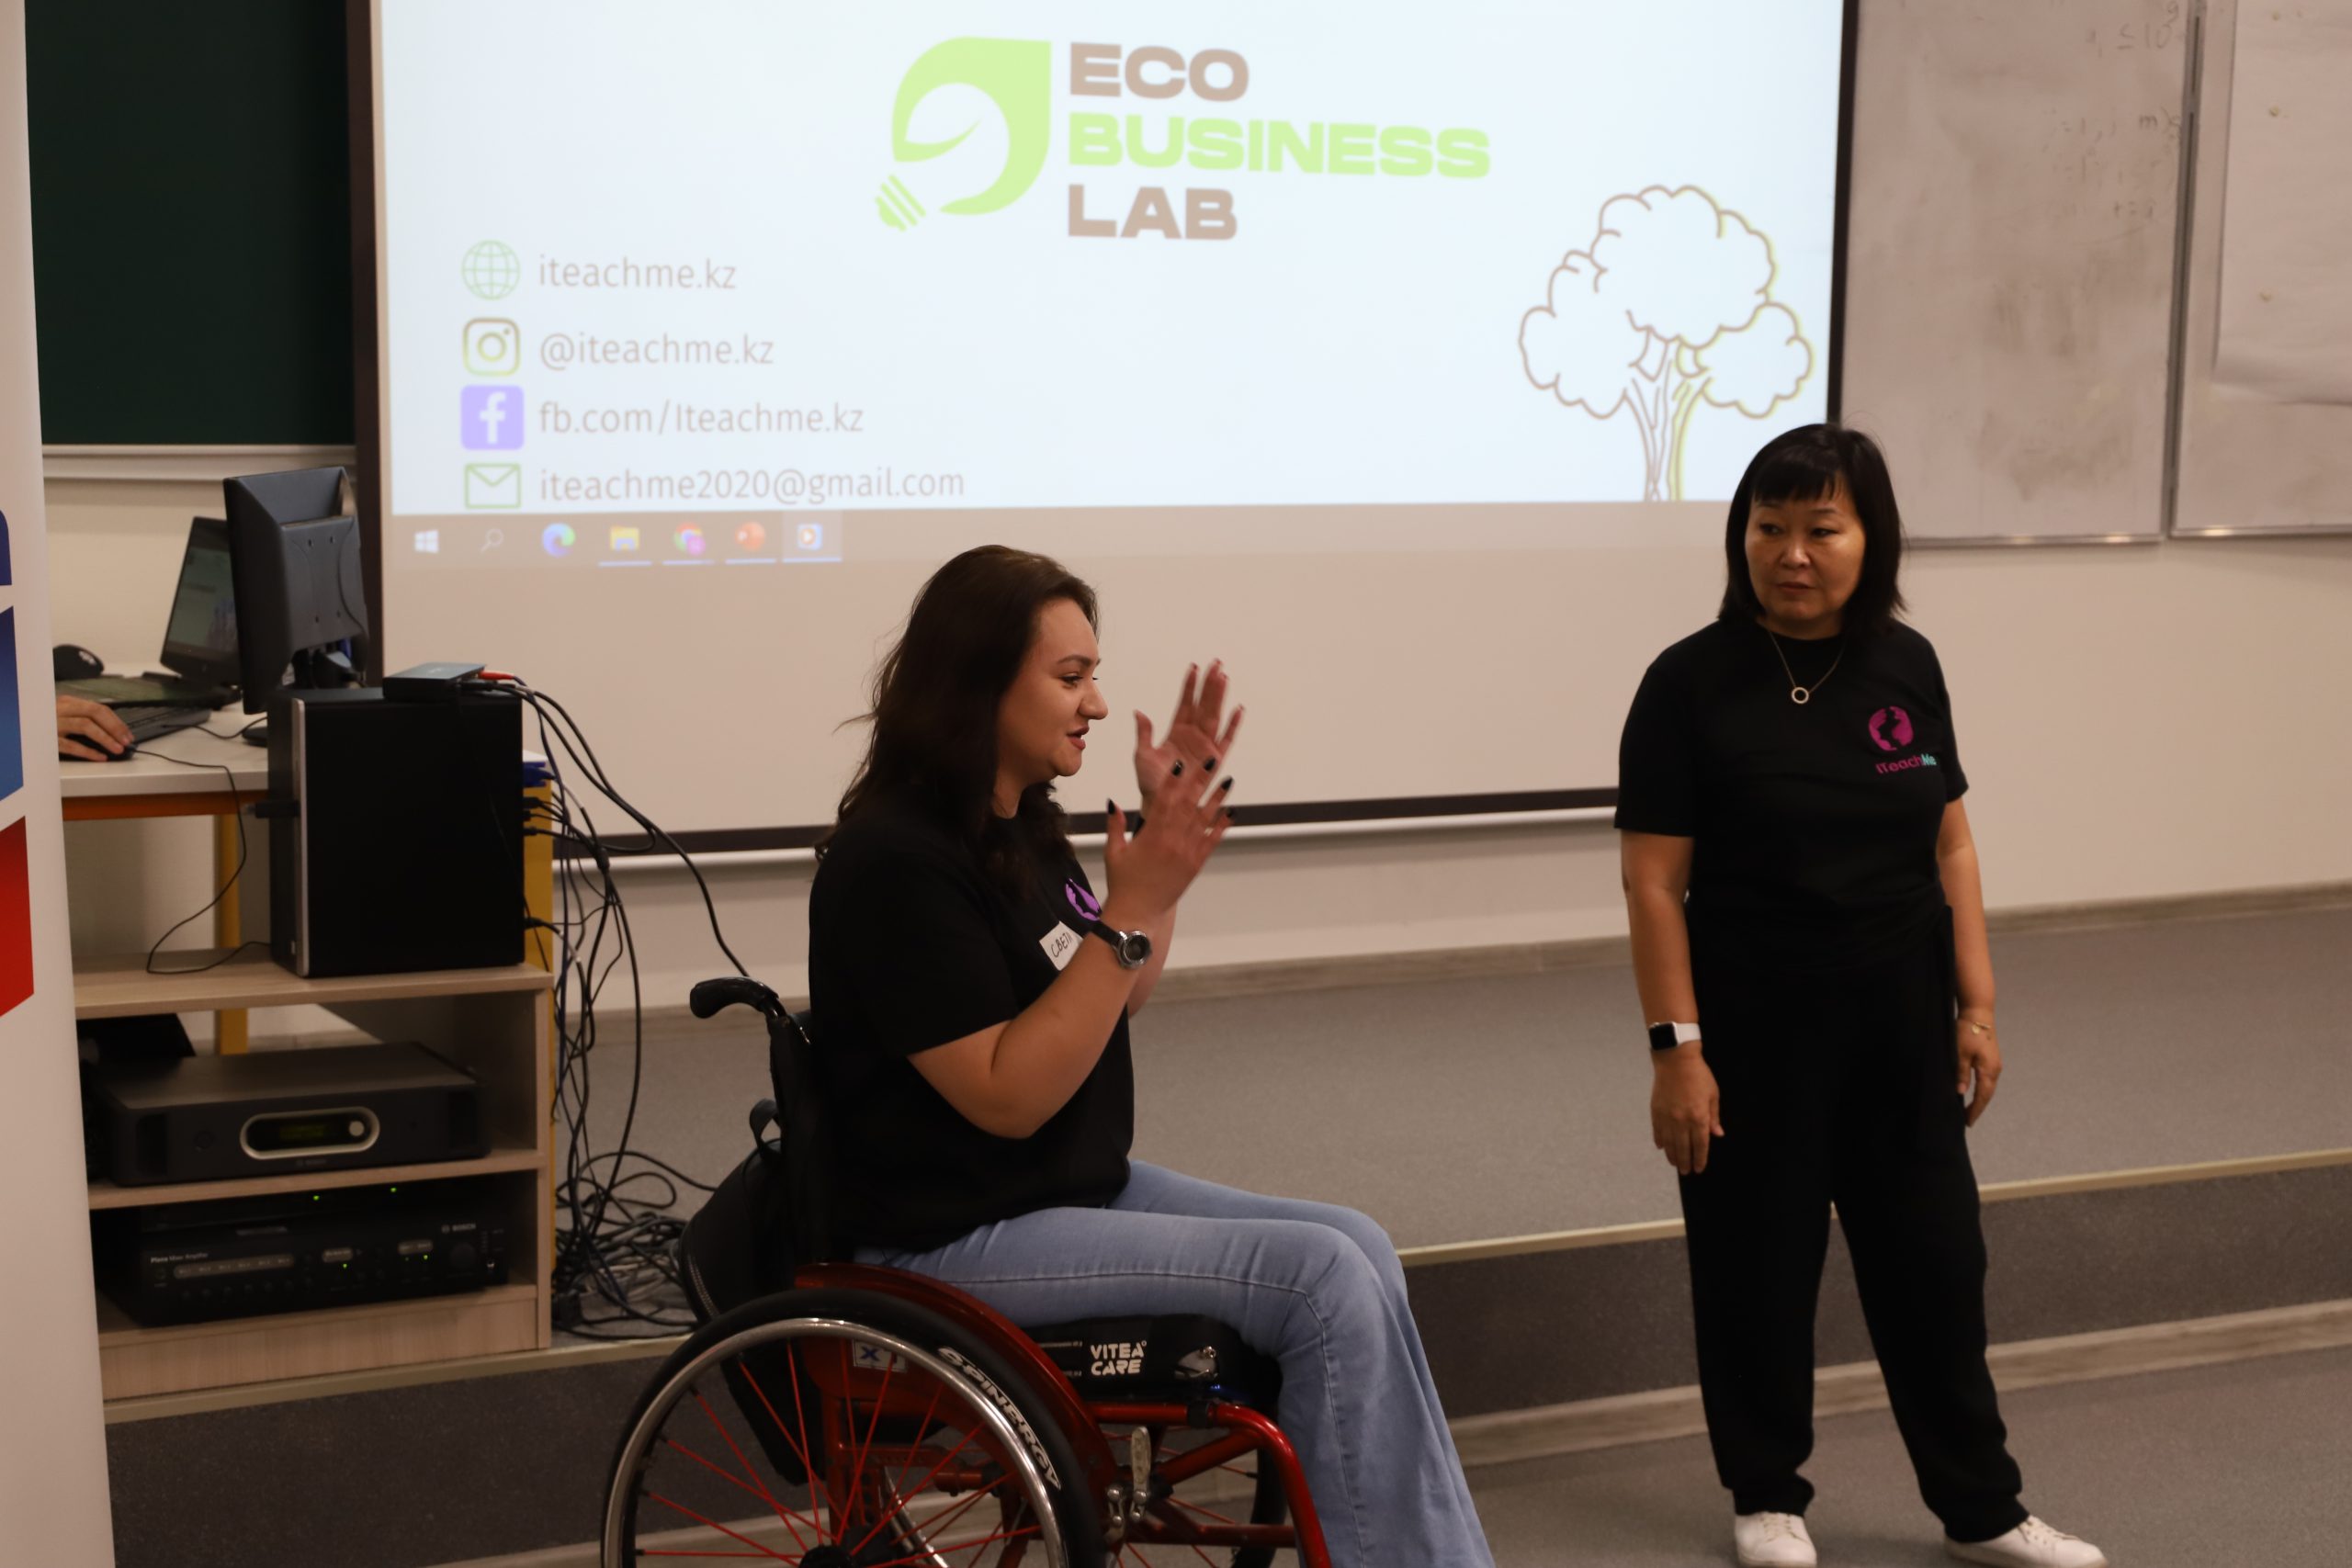 Уникальный проект для молодежи EcoBusinessLab стартовал на территории делового центра EXPO